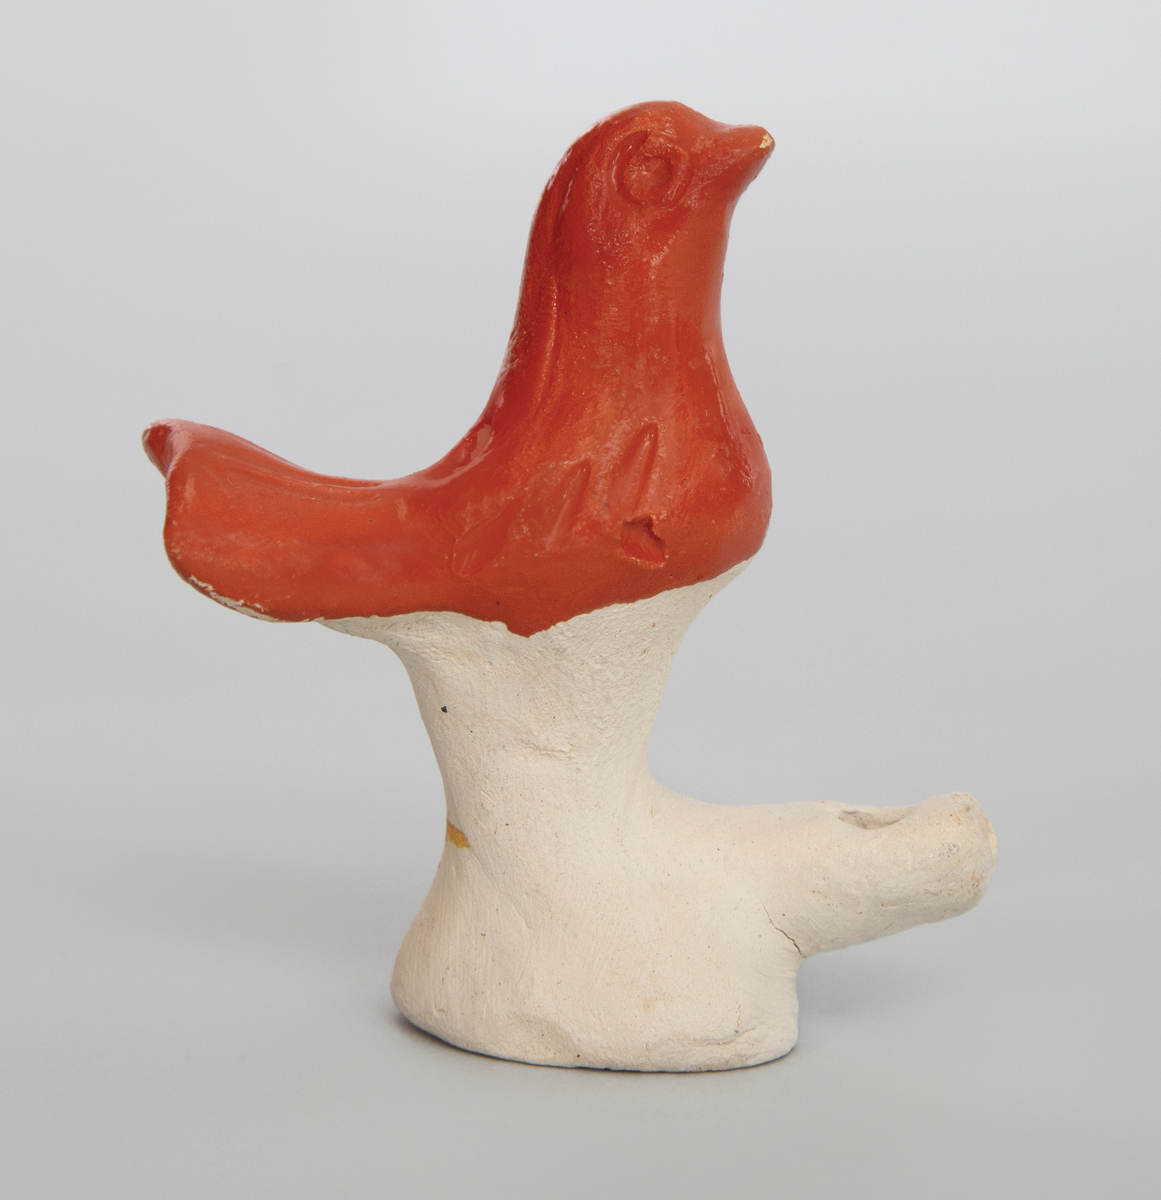 Spaltefløyte i keramikk i form av en liten fugl på en sokkel. Fuglen orange glasert, selve sokkelen uglasert.
Spalte og labium i sokkelen.
Ingen fingerhull.